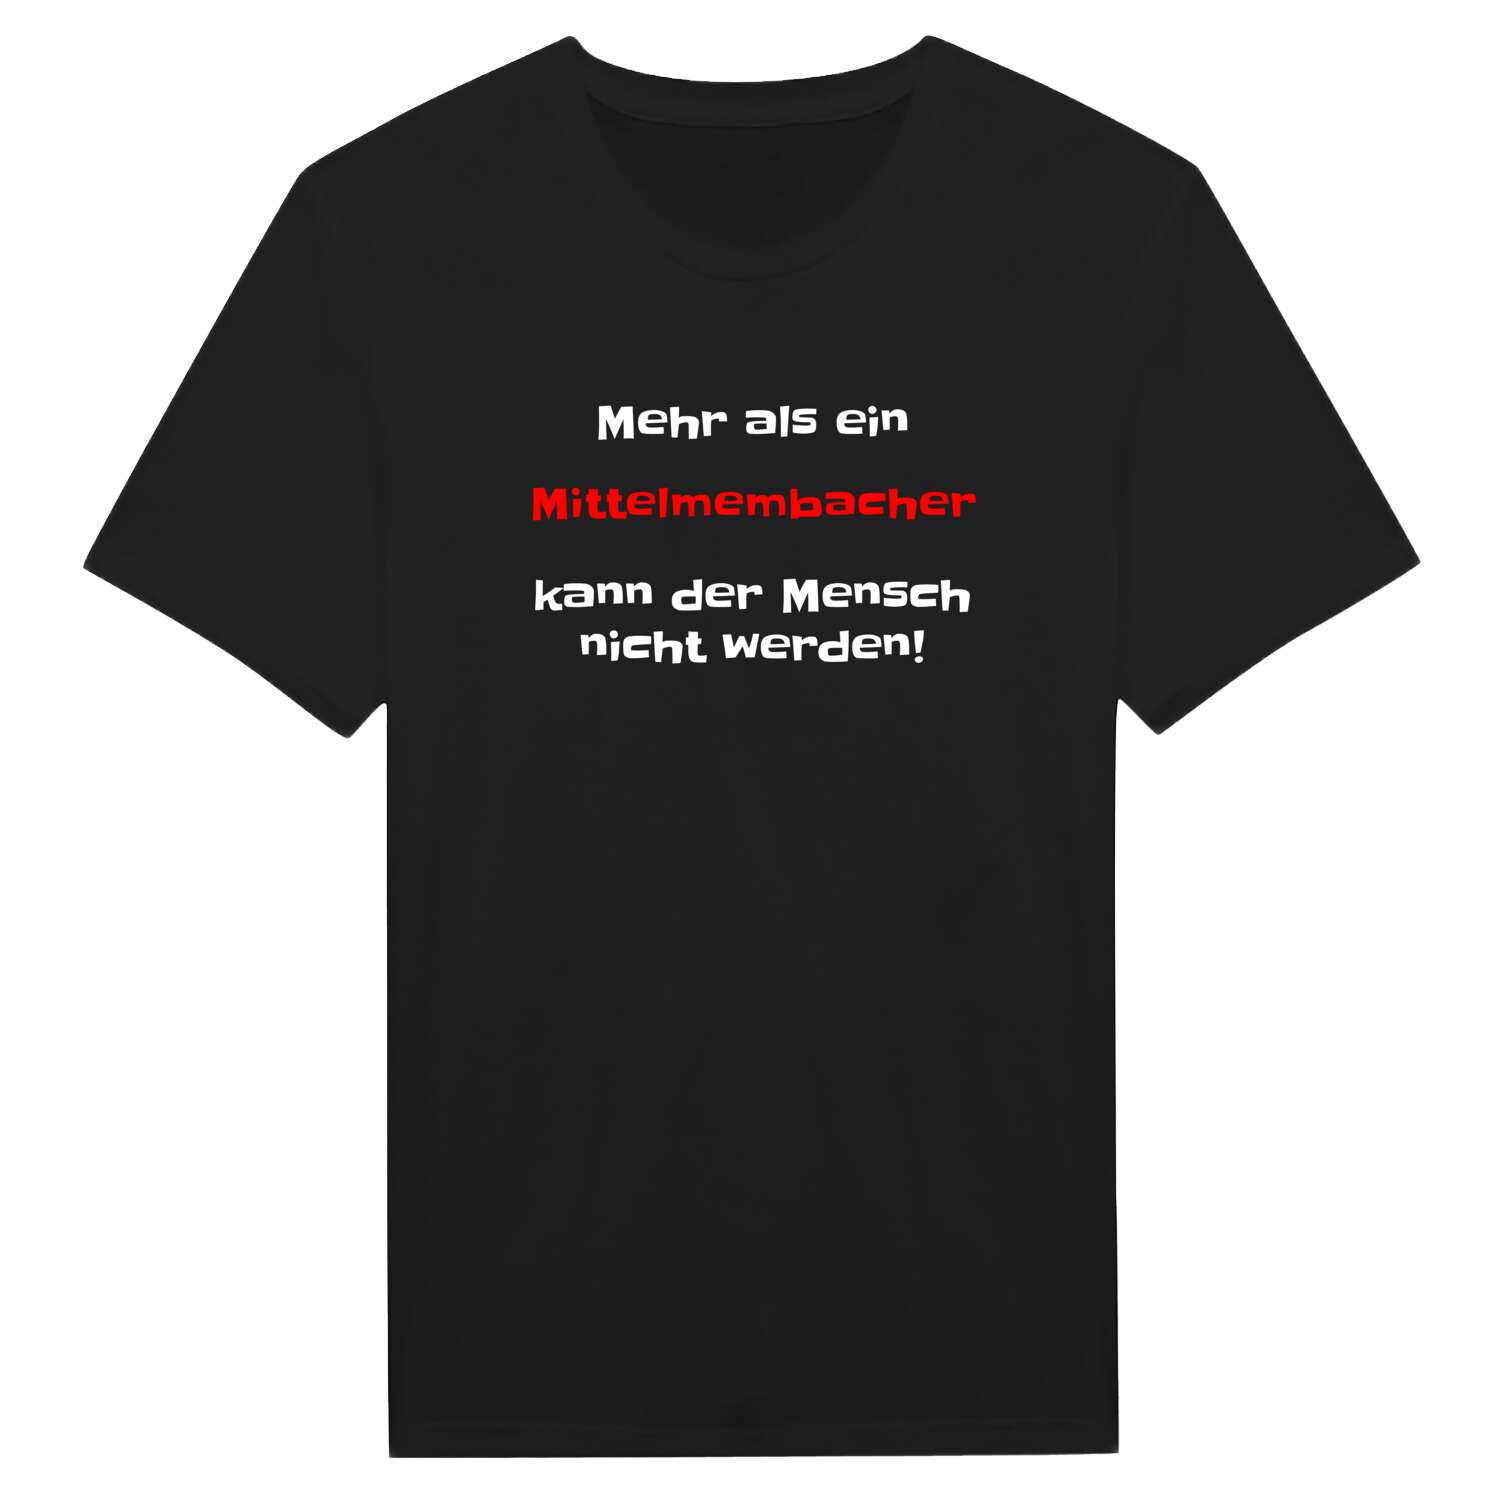 Mittelmembach T-Shirt »Mehr als ein«